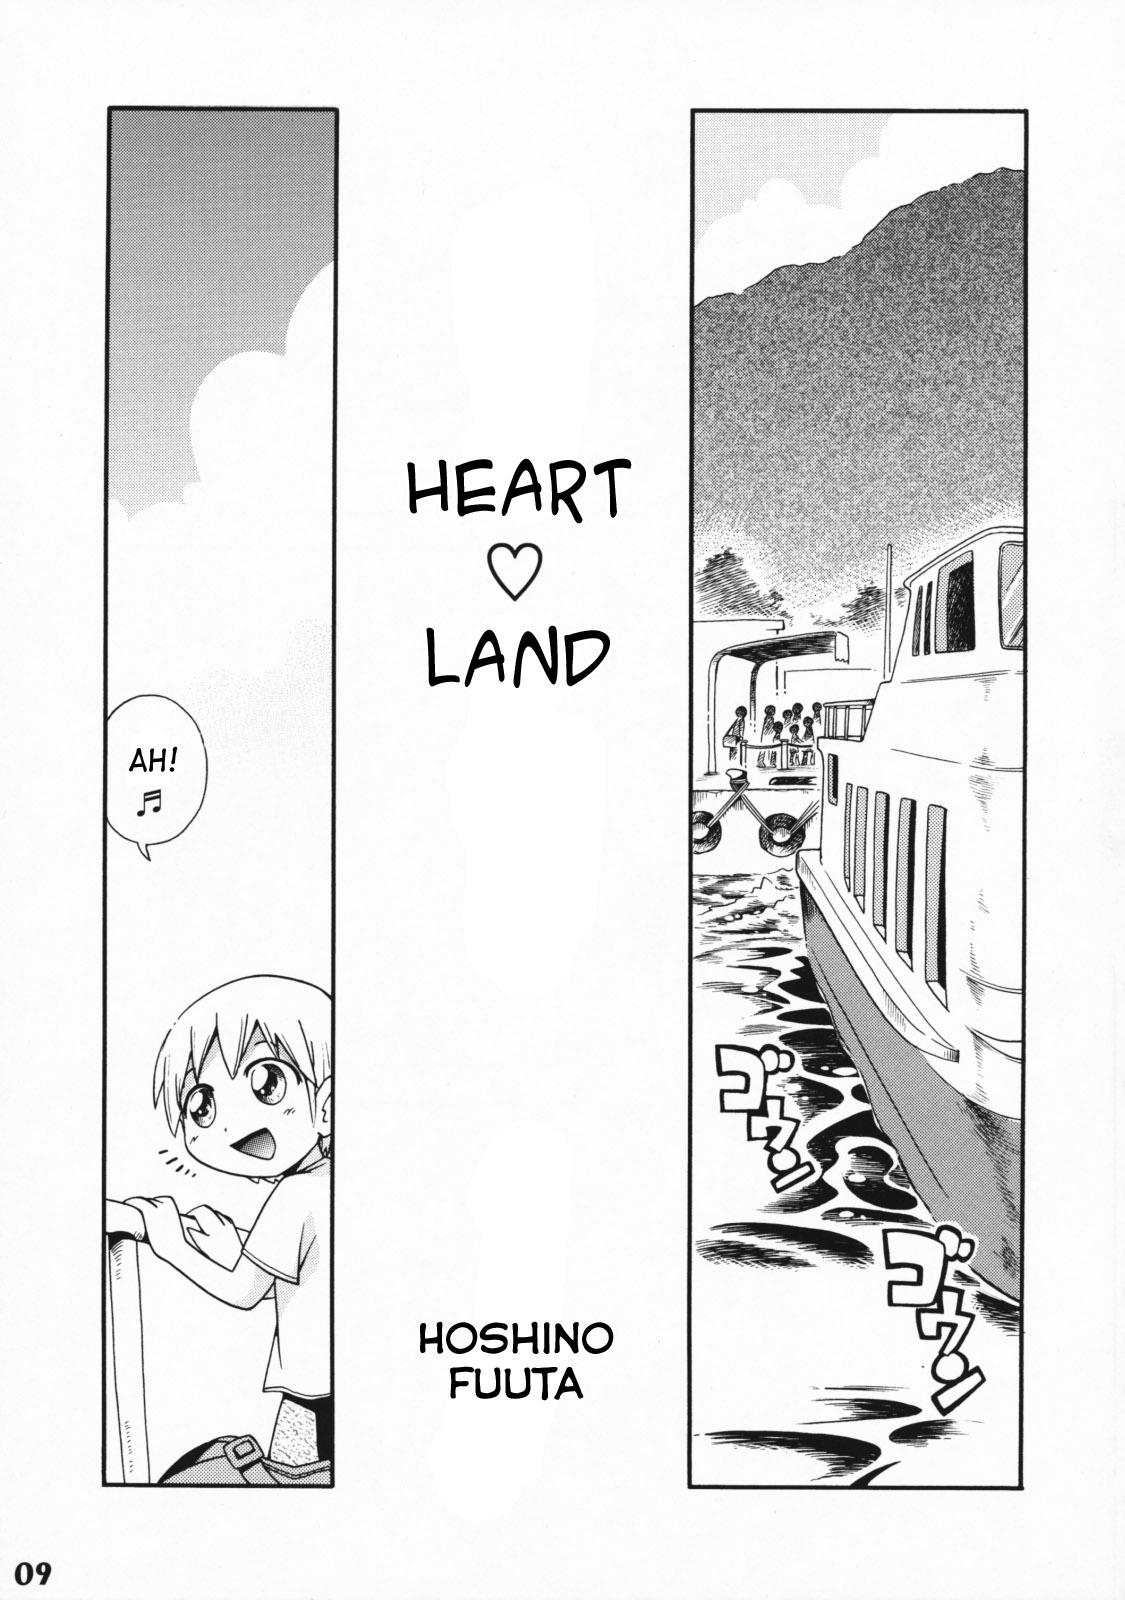 Heart Land 0